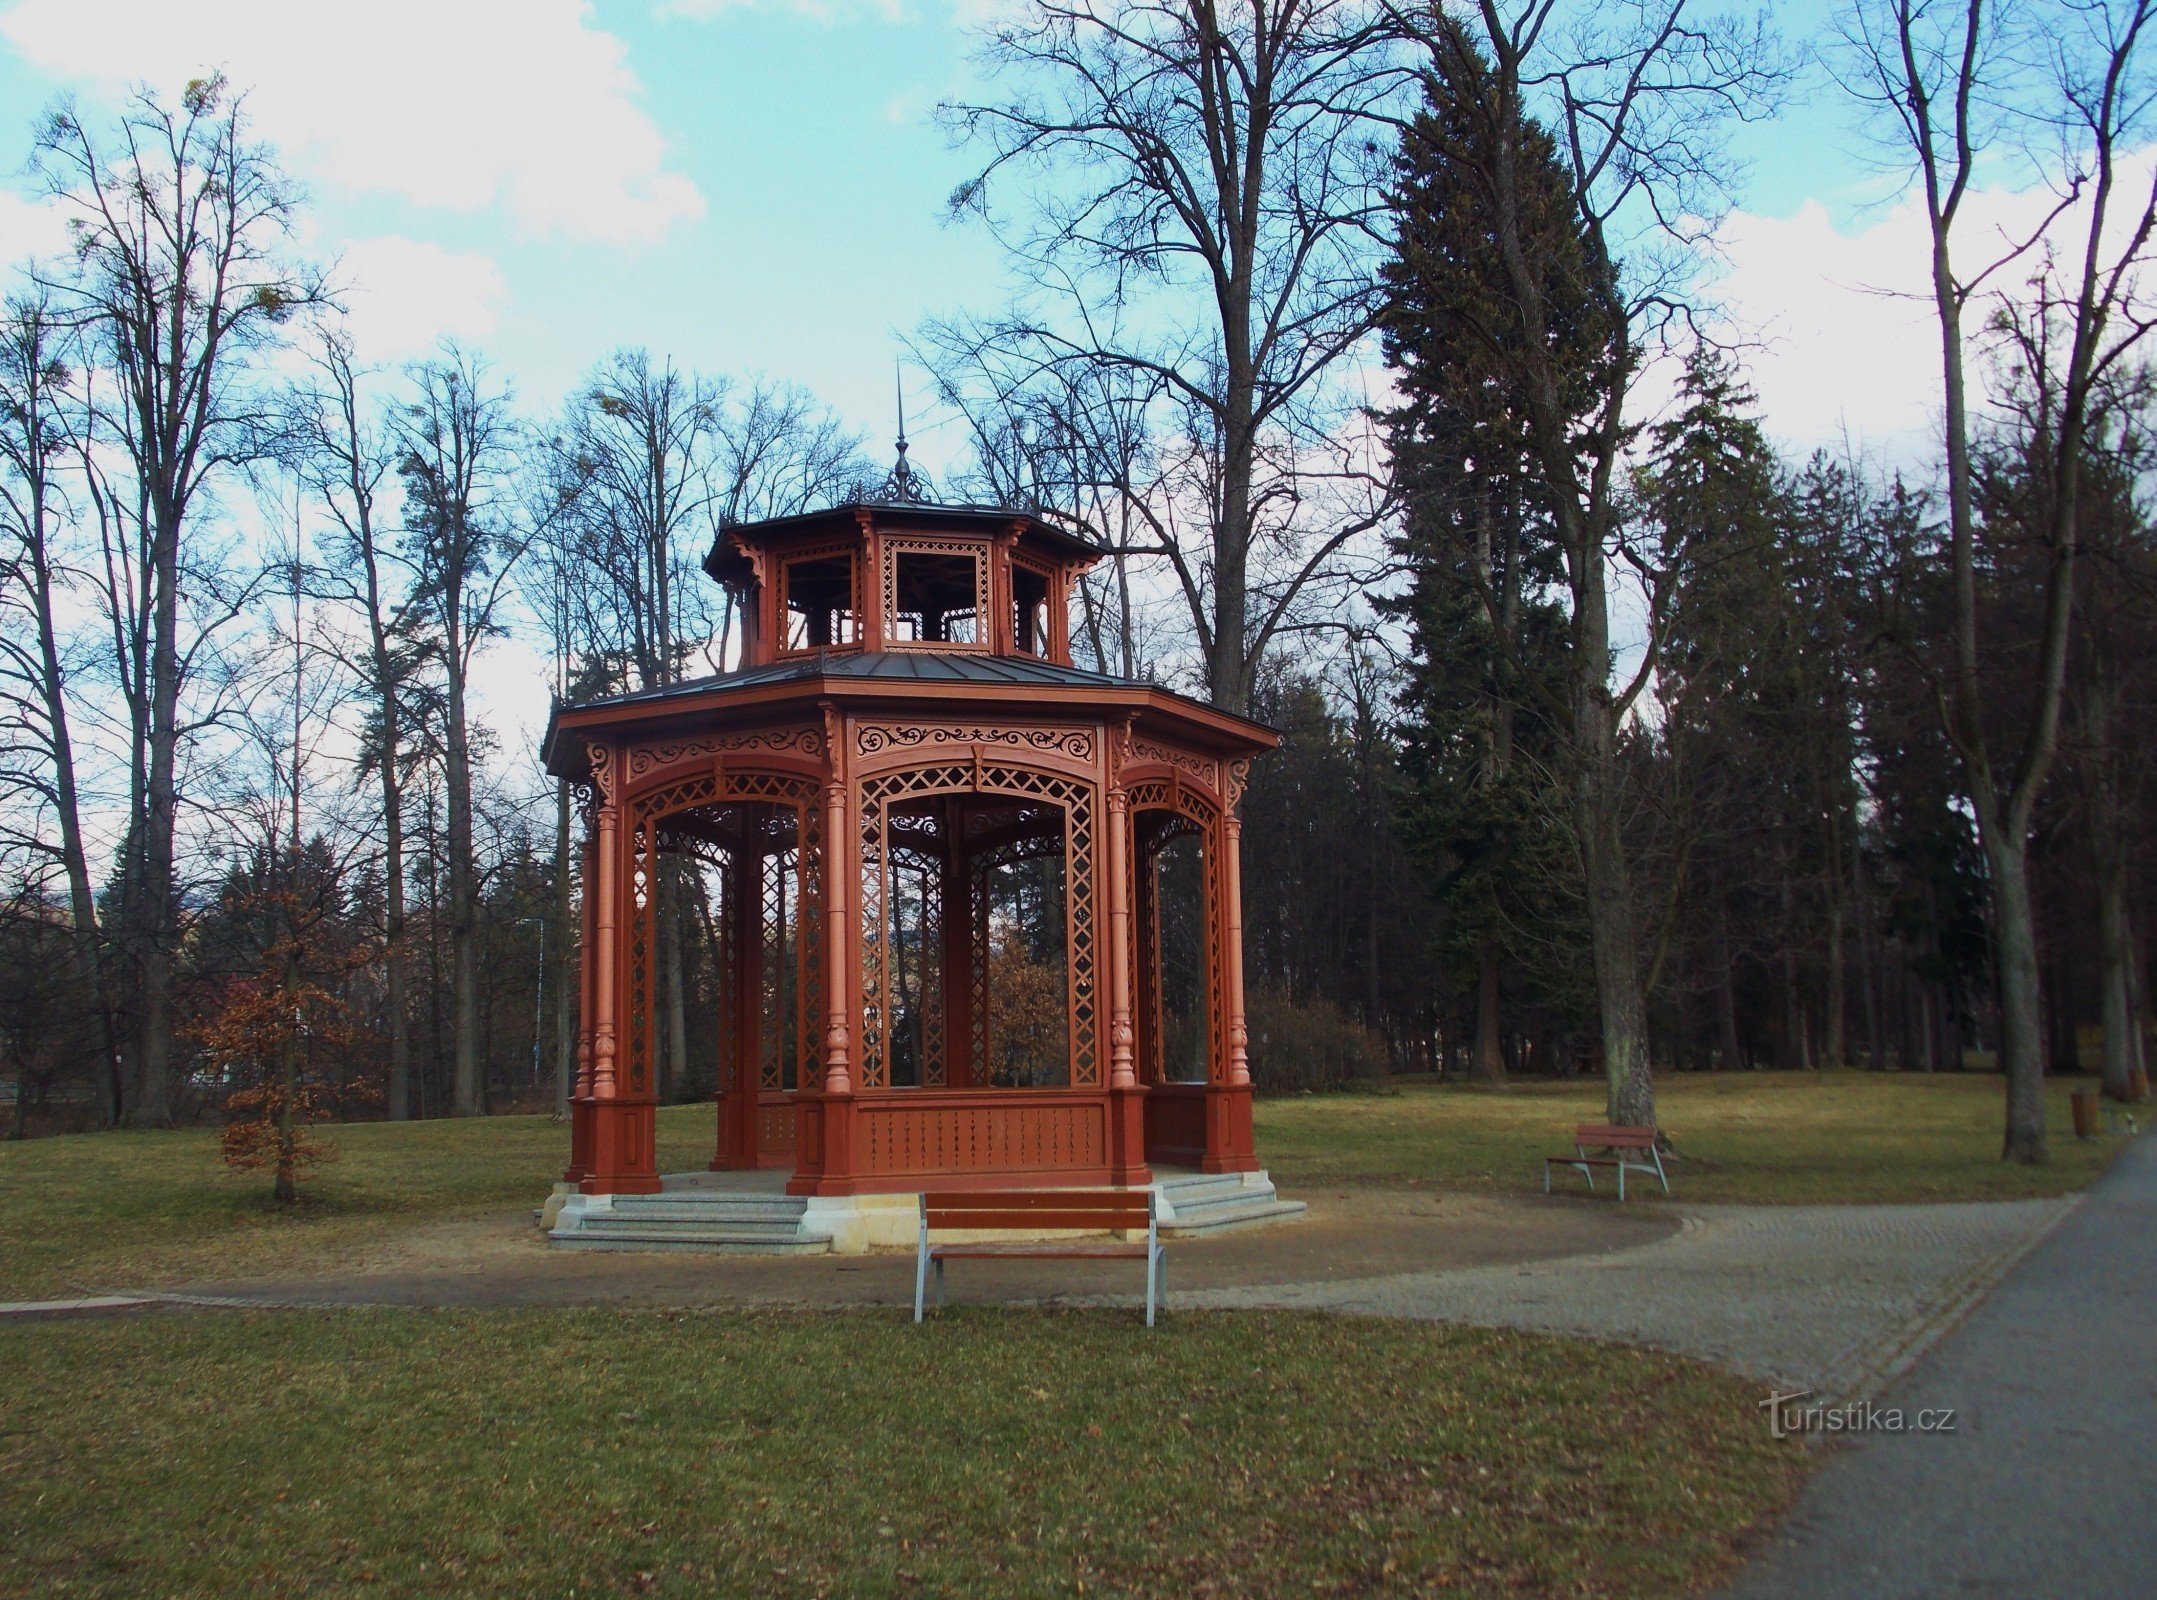 Μια βόλτα στο πάρκο σπα στο Rožnov pod Radhoštěm